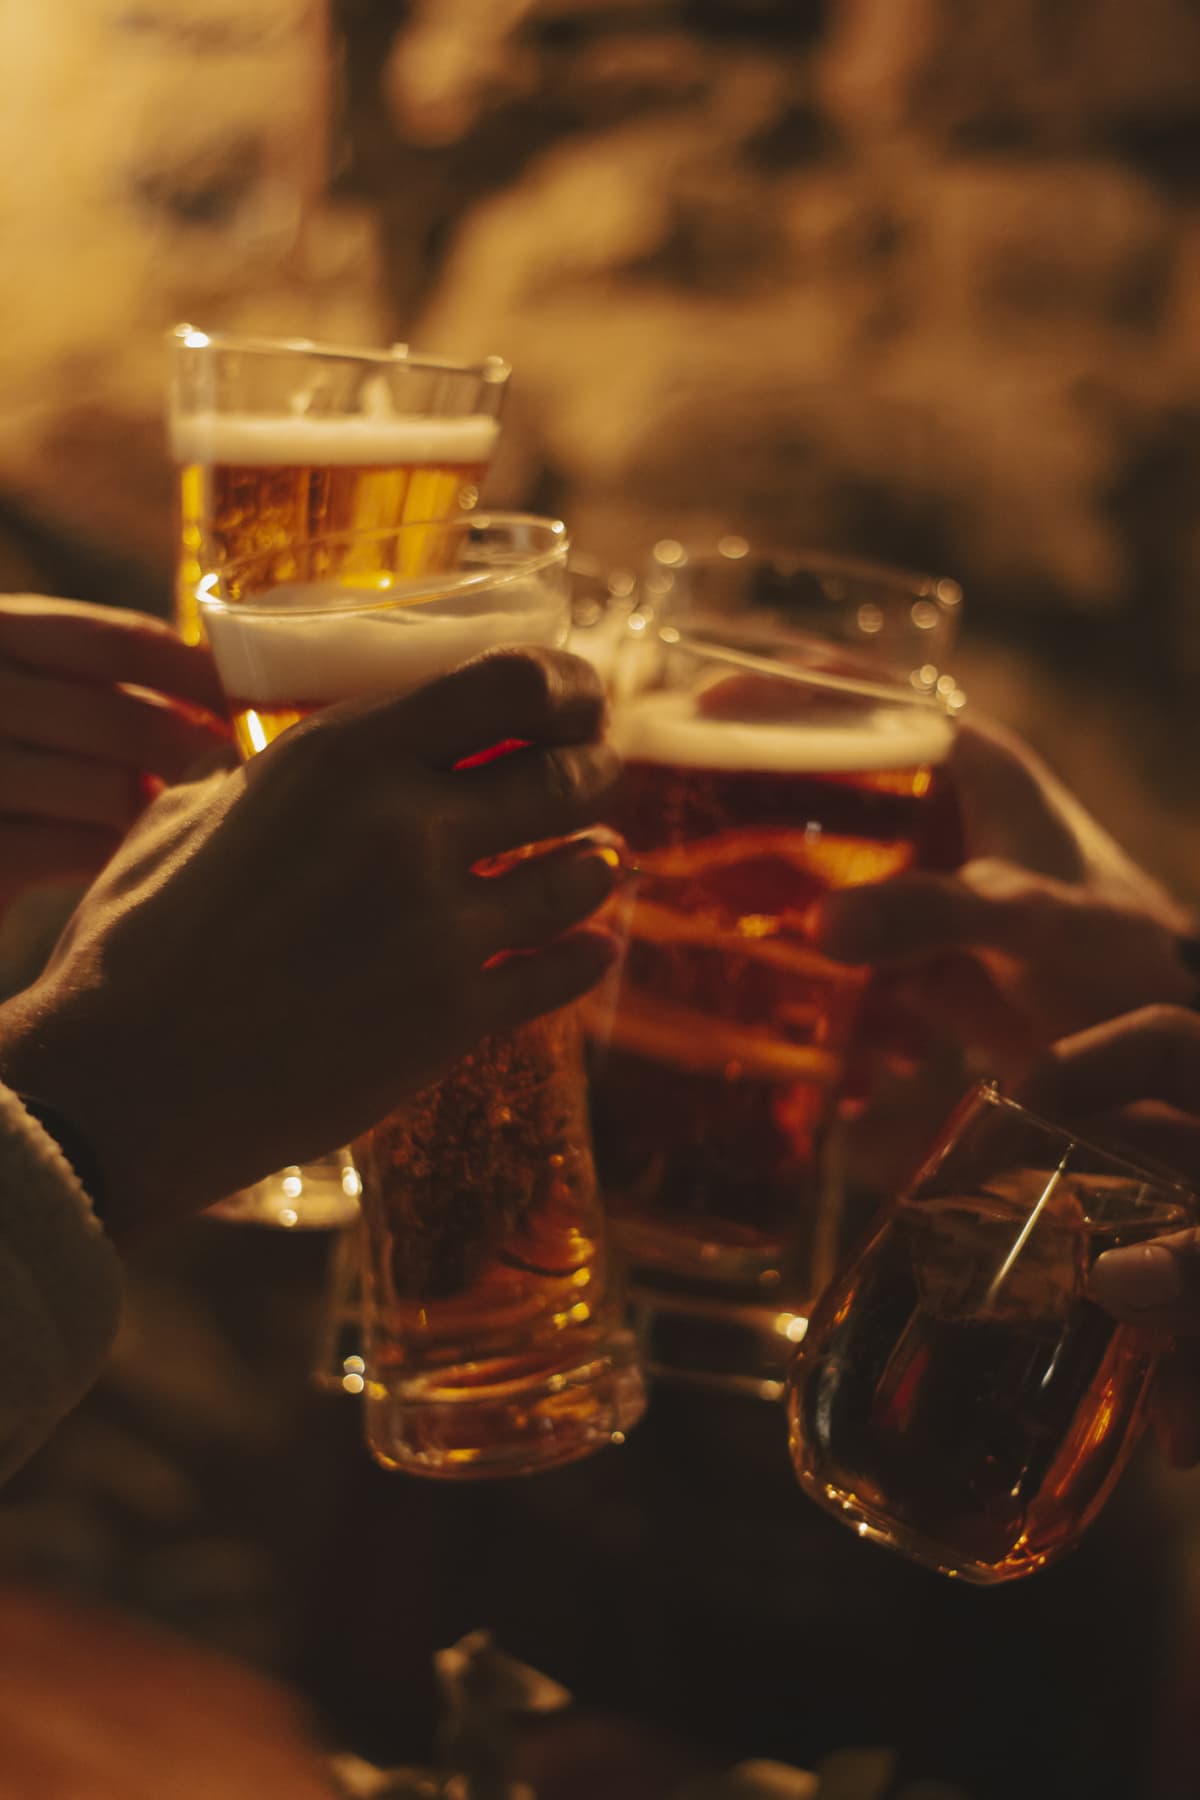 Multiple hands clinking beer glasses together